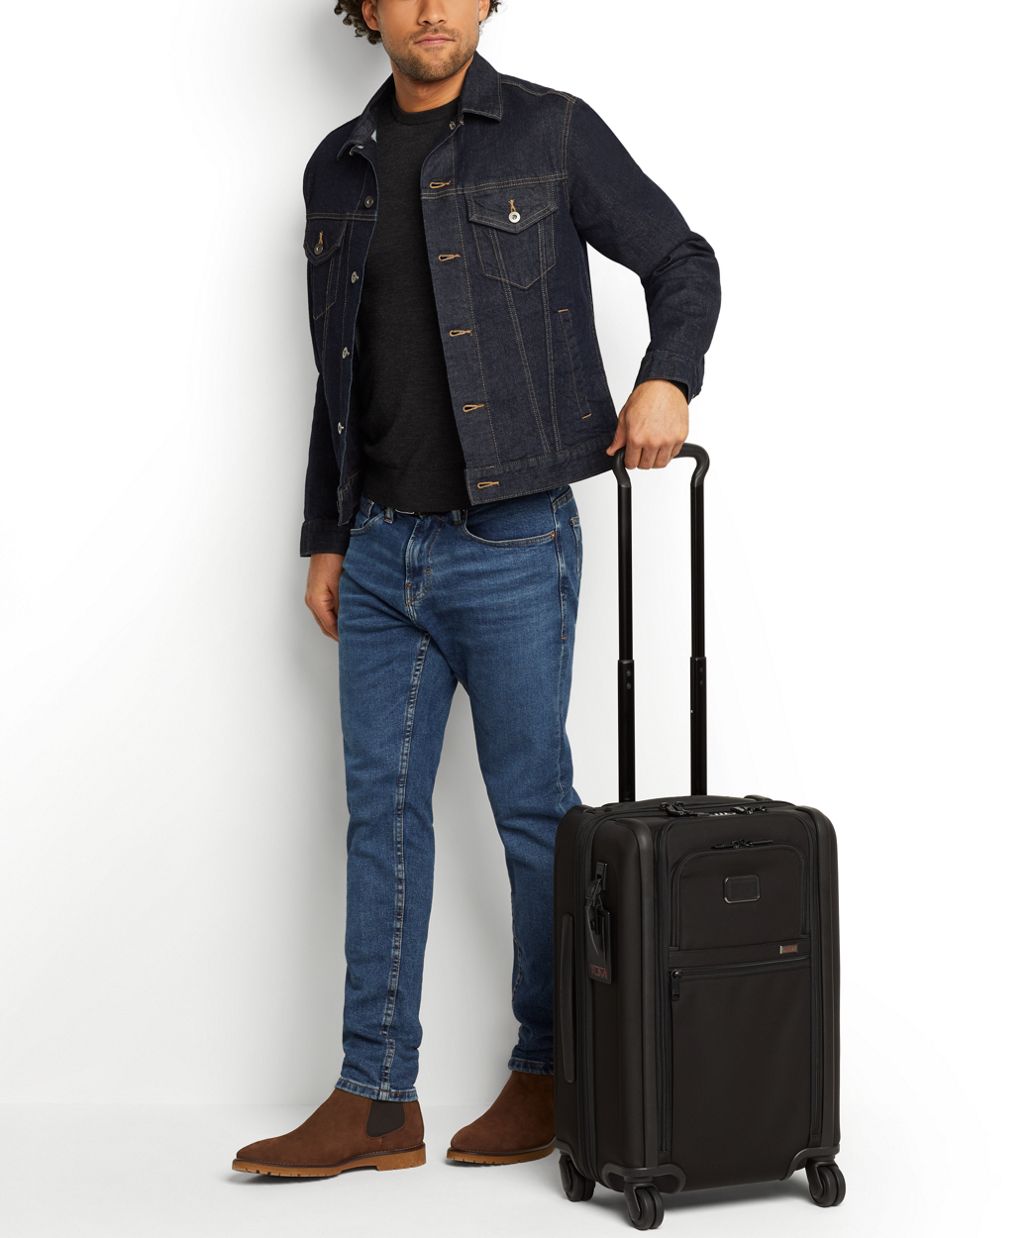 Tumi Aero International Expandable 4 Wheel Carry on Suitcase